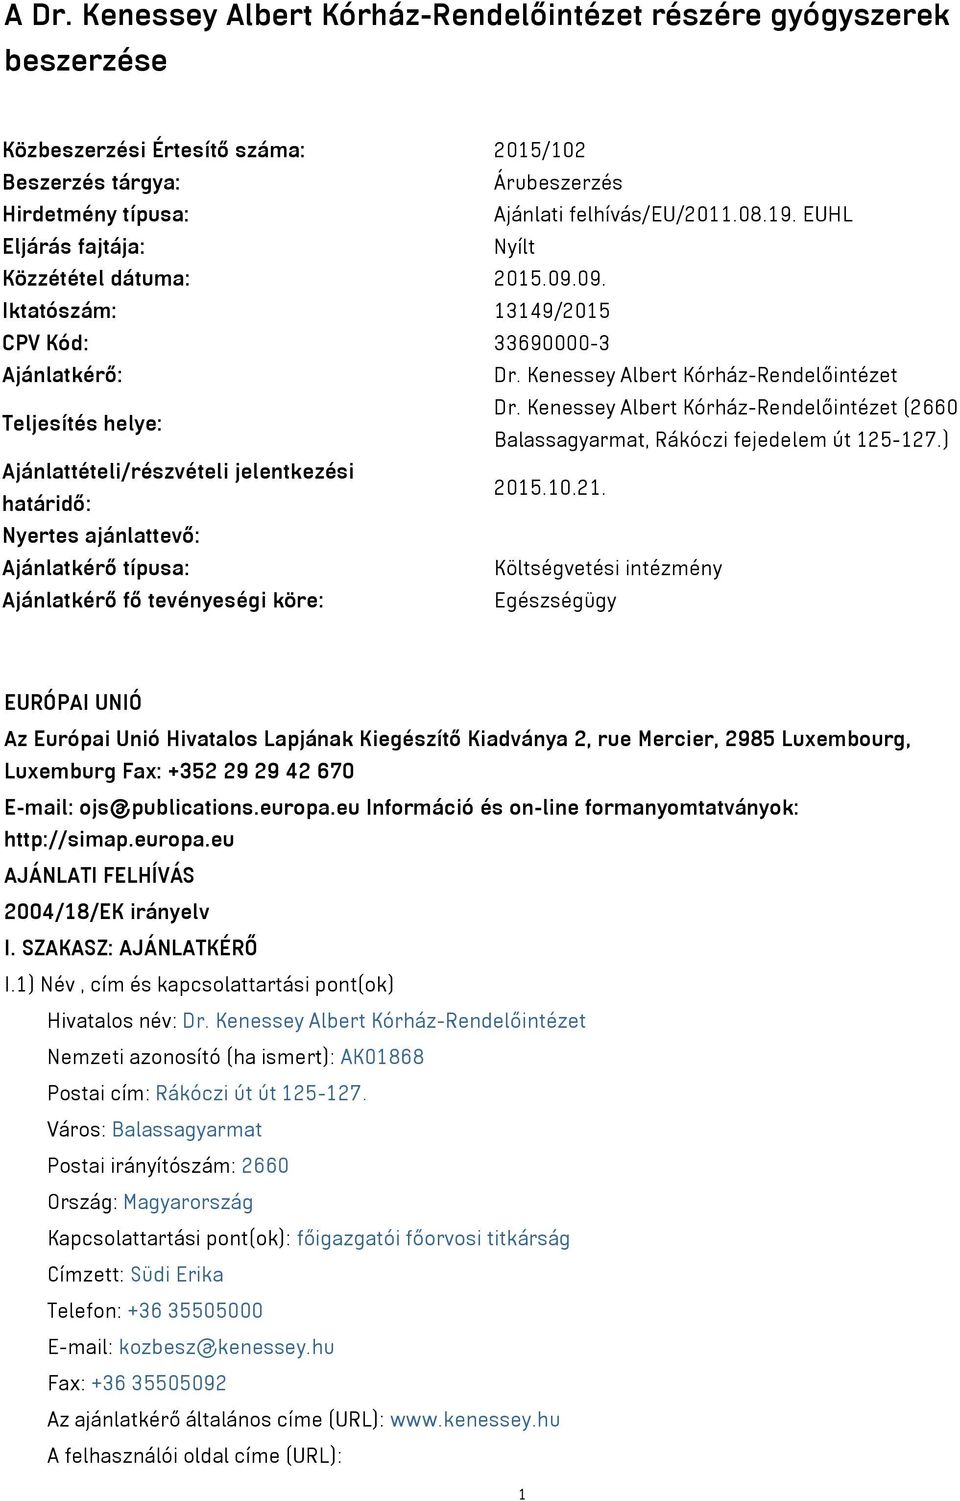 Kenessey Albert Kórház-Rendelőintézet (2660 Balassagyarmat, Rákóczi fejedelem út 125-127.) Ajánlattételi/részvételi jelentkezési határidő: 2015.10.21.